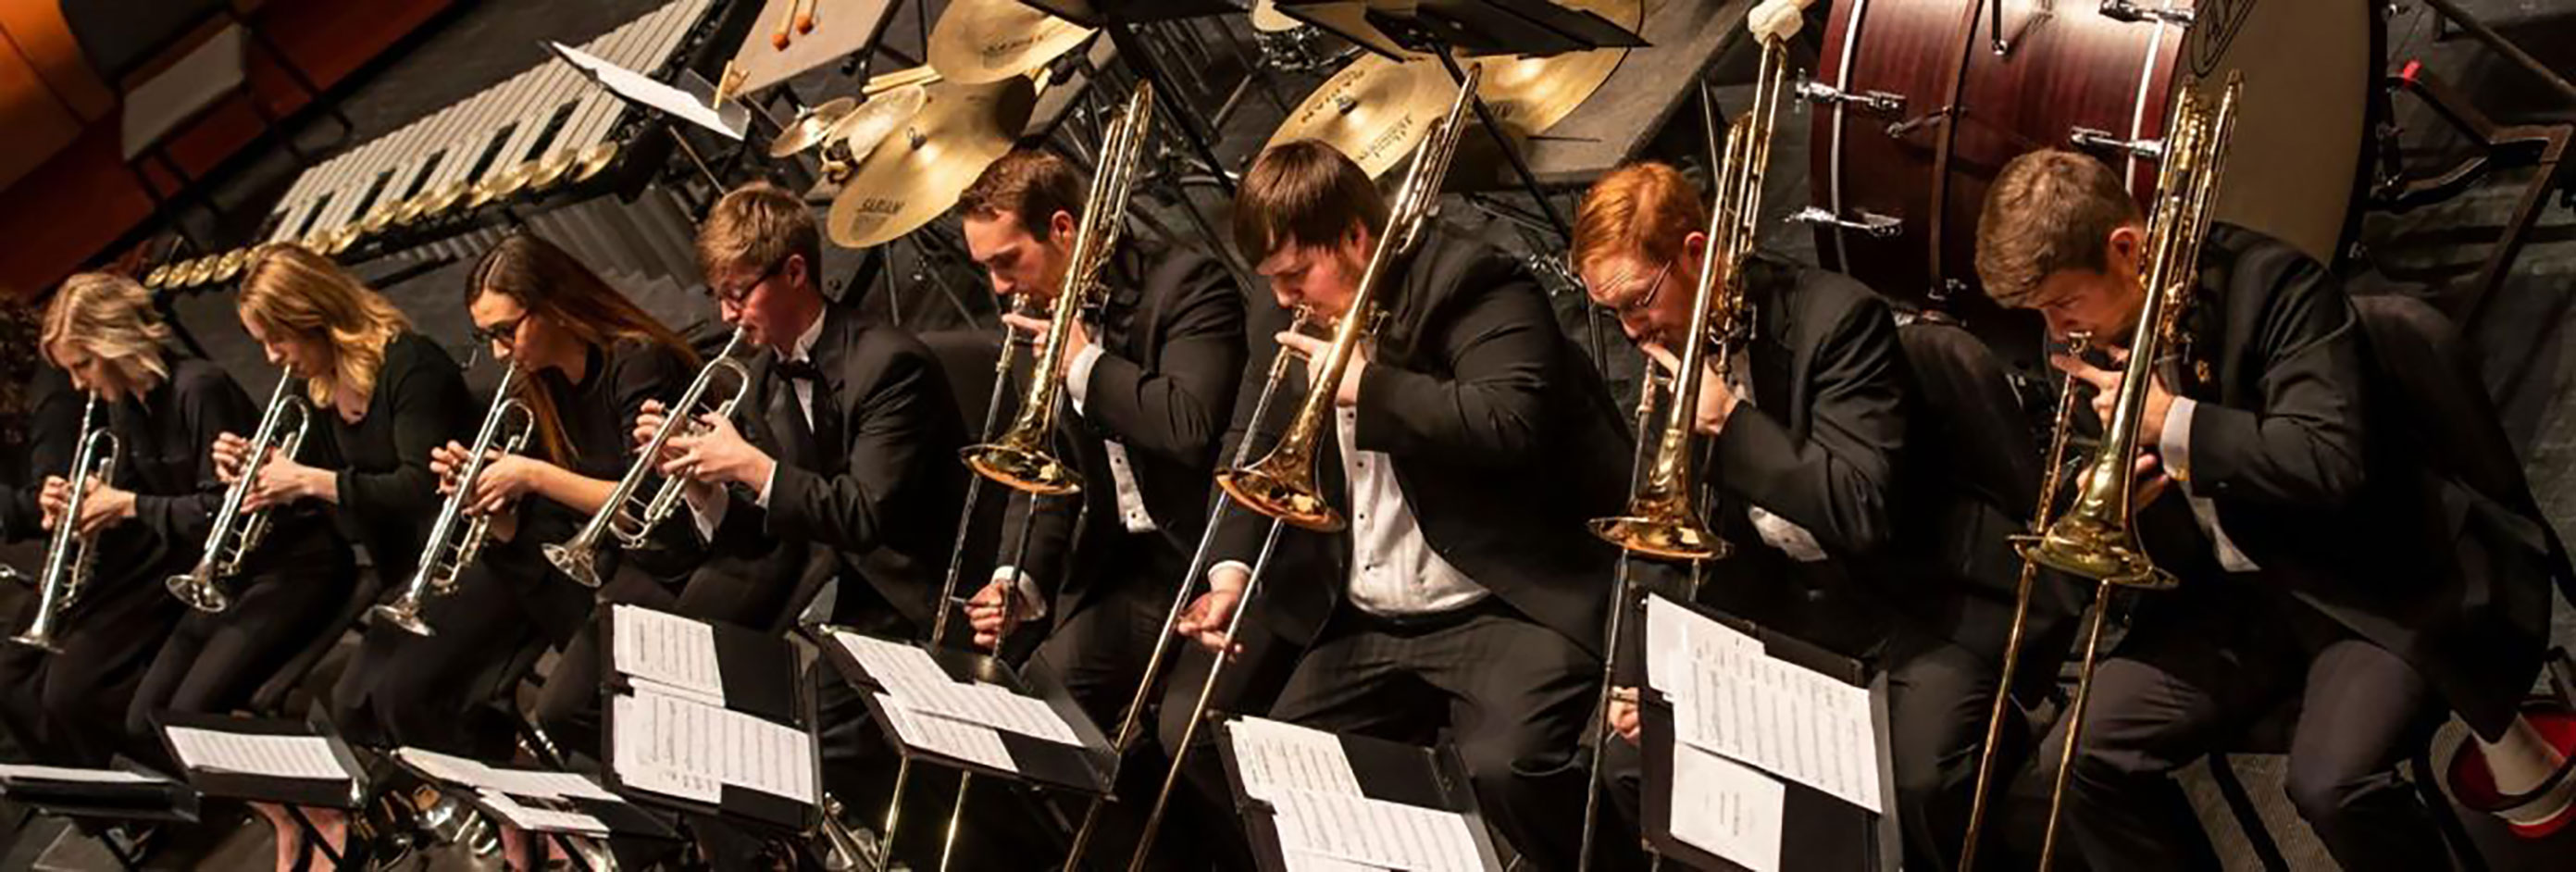 Tuba players performing.